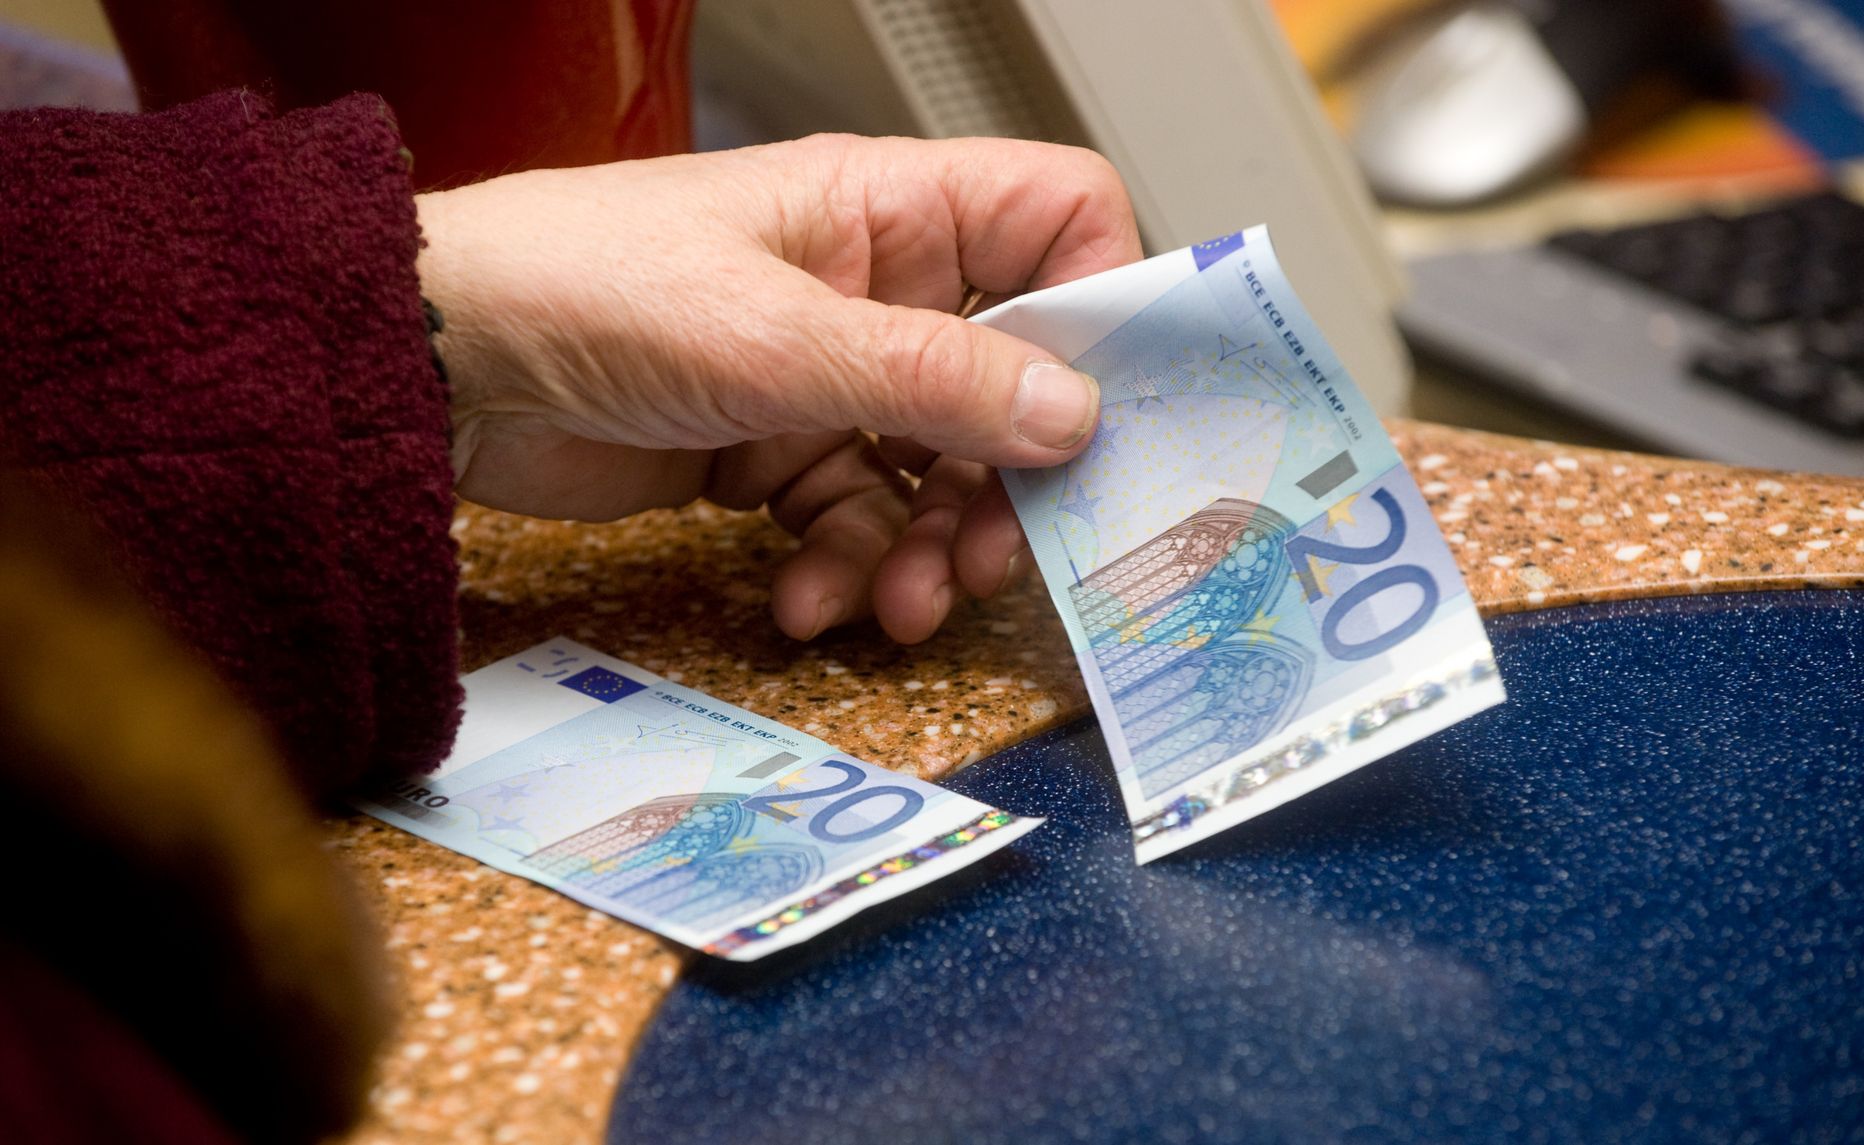 Tasub meenutada, et Eesti on üks väheseid Euroopa riike, kus inimestel on võimalik korraga teenida nii täispalka kui täispensioni.